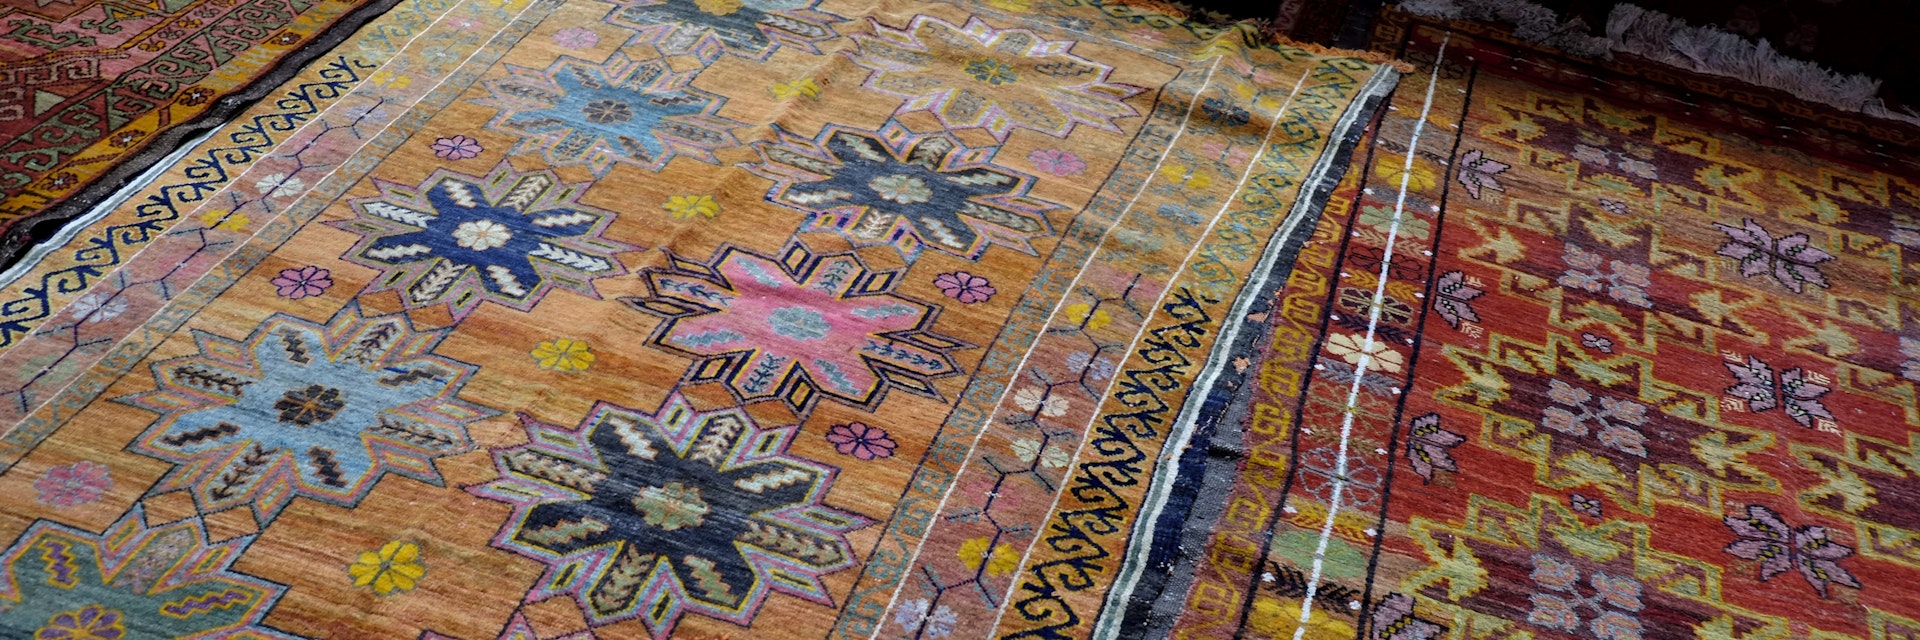 (GERMANY OUT) Teppiche mit traditionellen Mustern - Kunsthandwerk auf dem Basar im Zentralen Staatsmuseum der Republik Kasachstan in Almaty  (Photo by snapshot-photography/ullstein bild via Getty Images)